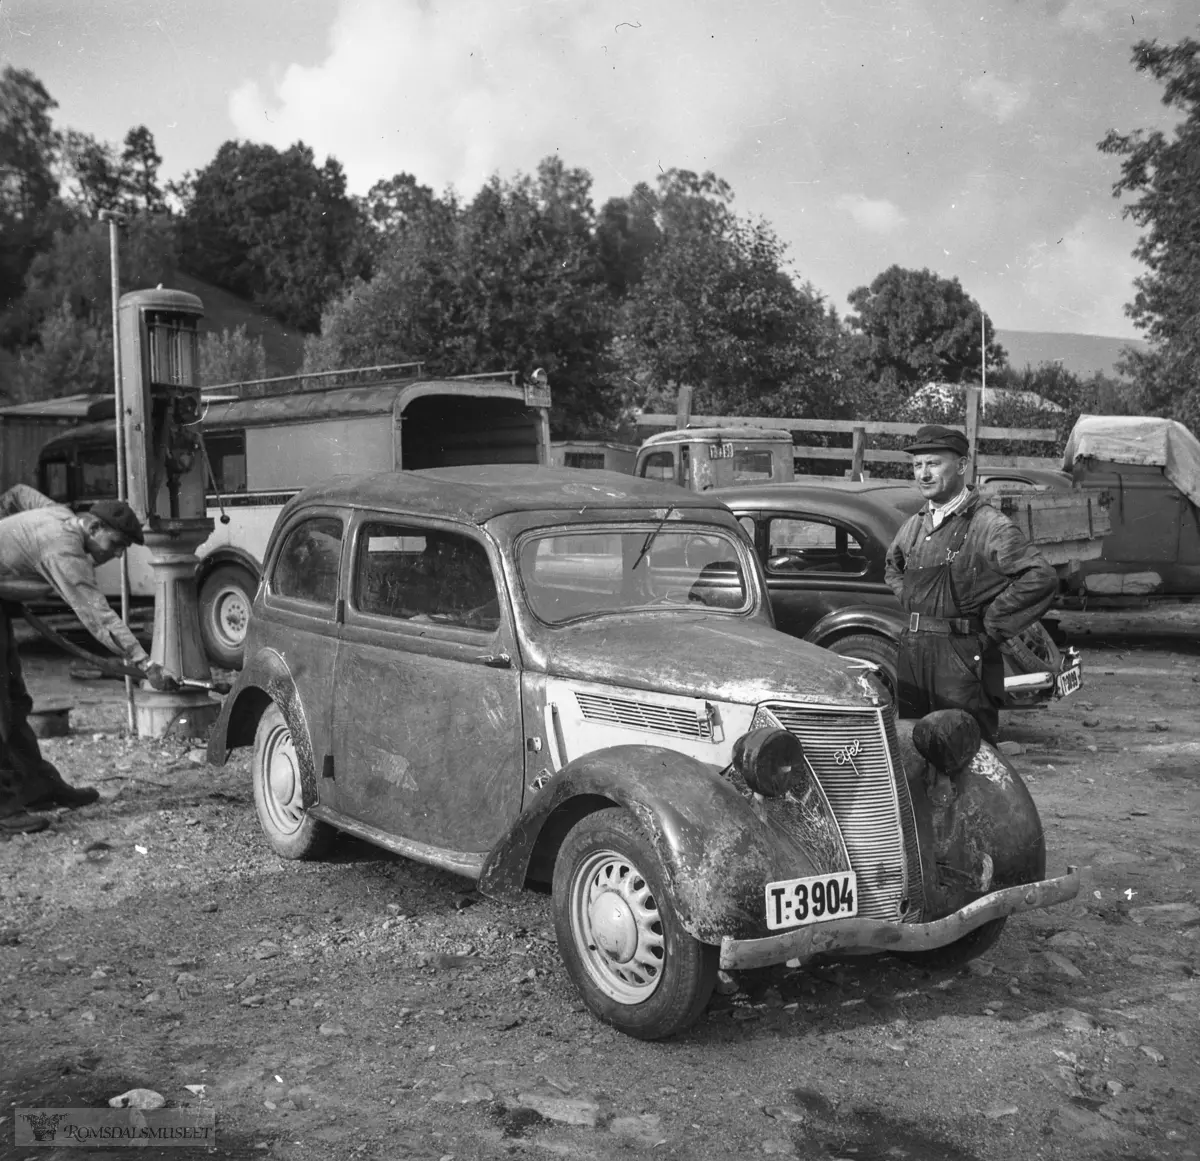 T-3904 står i Hvem eier bilen 1948 på Jon Bjordal, Molde, som Ford Eifel. Årsmodellen er 1937-38. Karosseritype: Cabriocoach, dvs. faste vindusrammer, men stofftak som kan rulles tilbake.